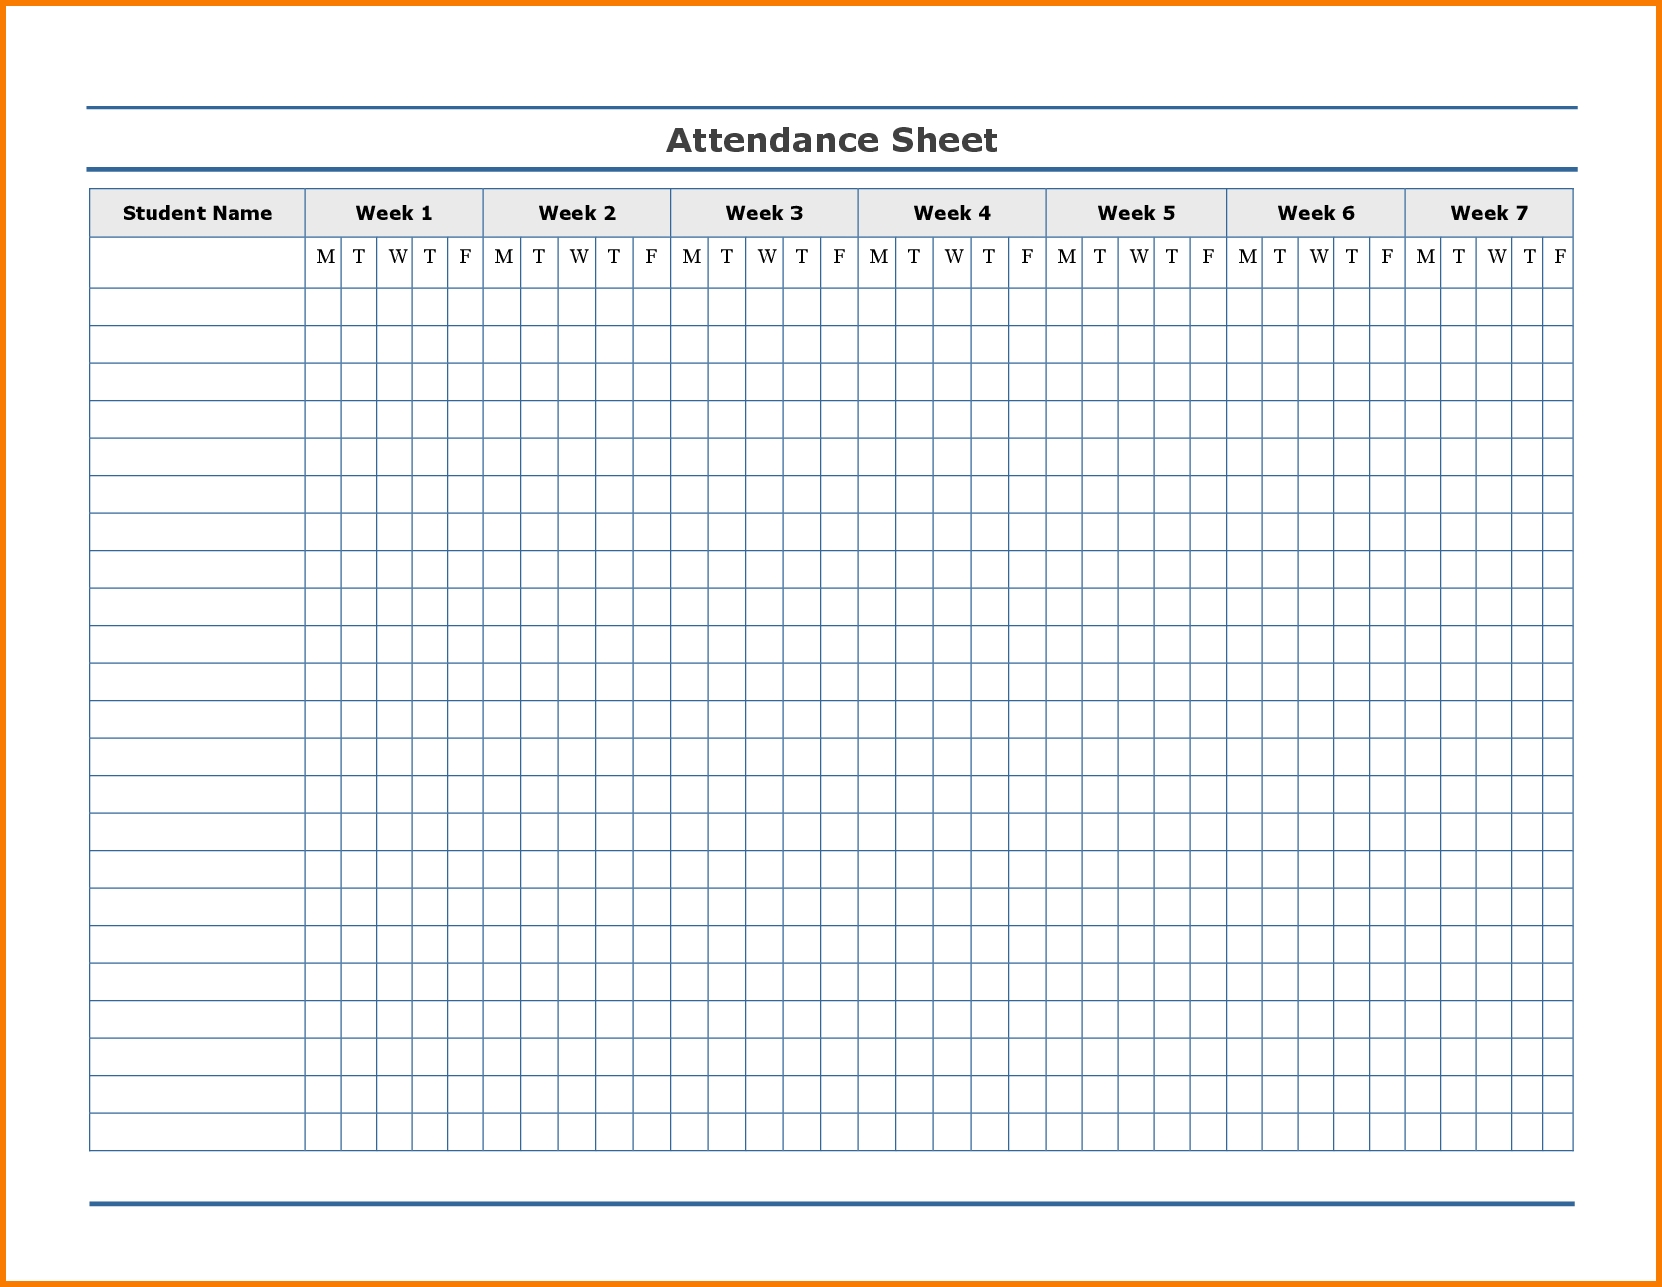 Attendance Calendar Template - Zamhari with Printable Employee Attendance Calendar Template